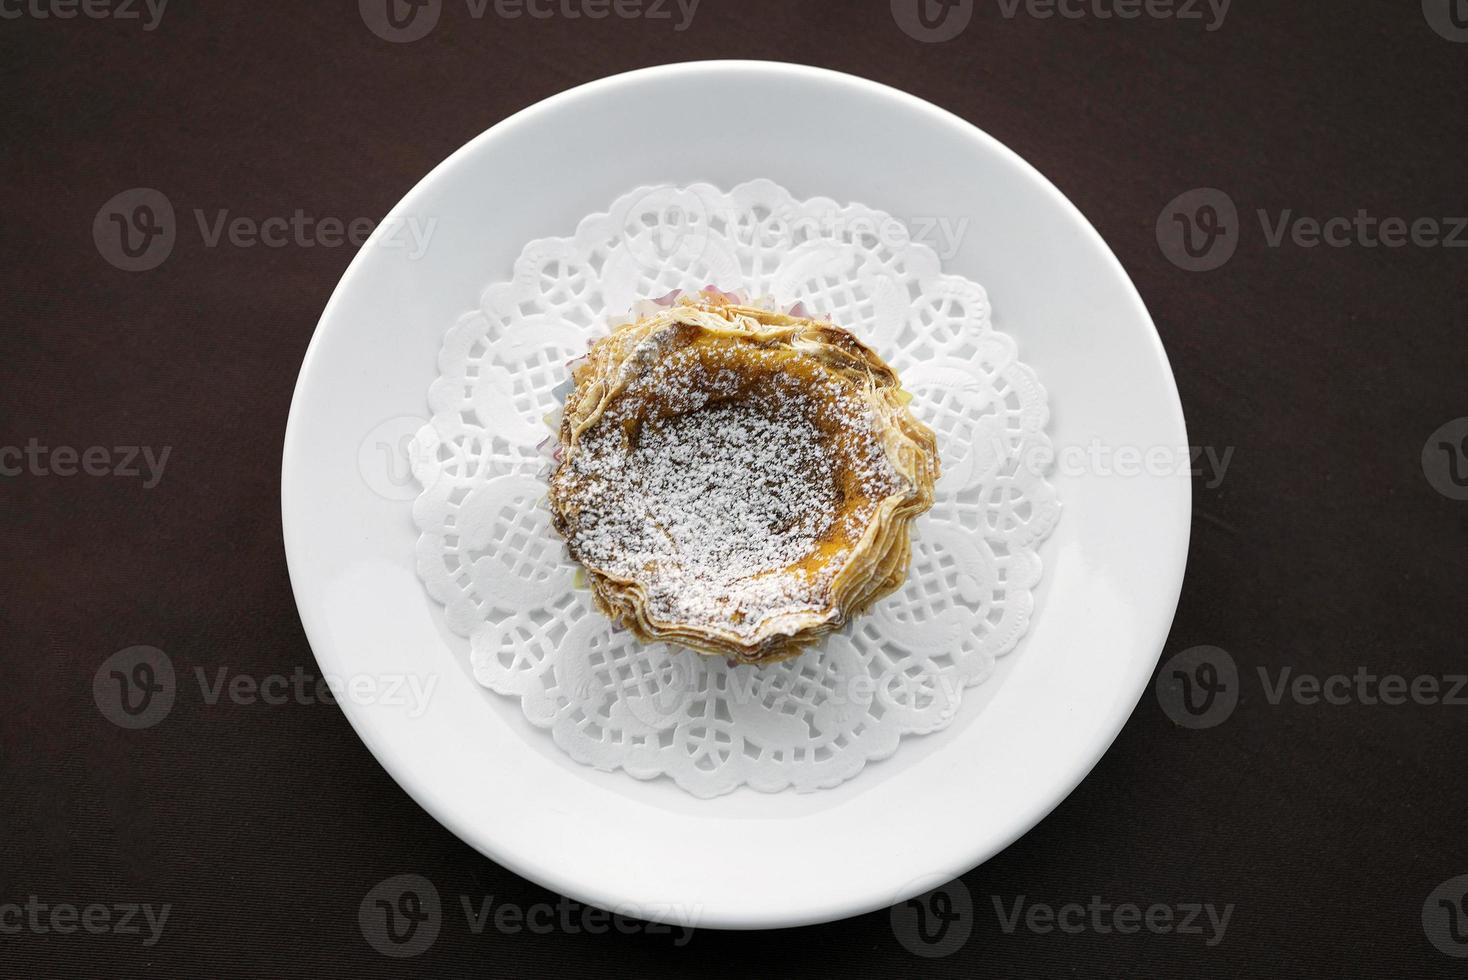 pastel de nata famoso bocadillo dulce portugués flan de huevo tarta de hojaldre foto